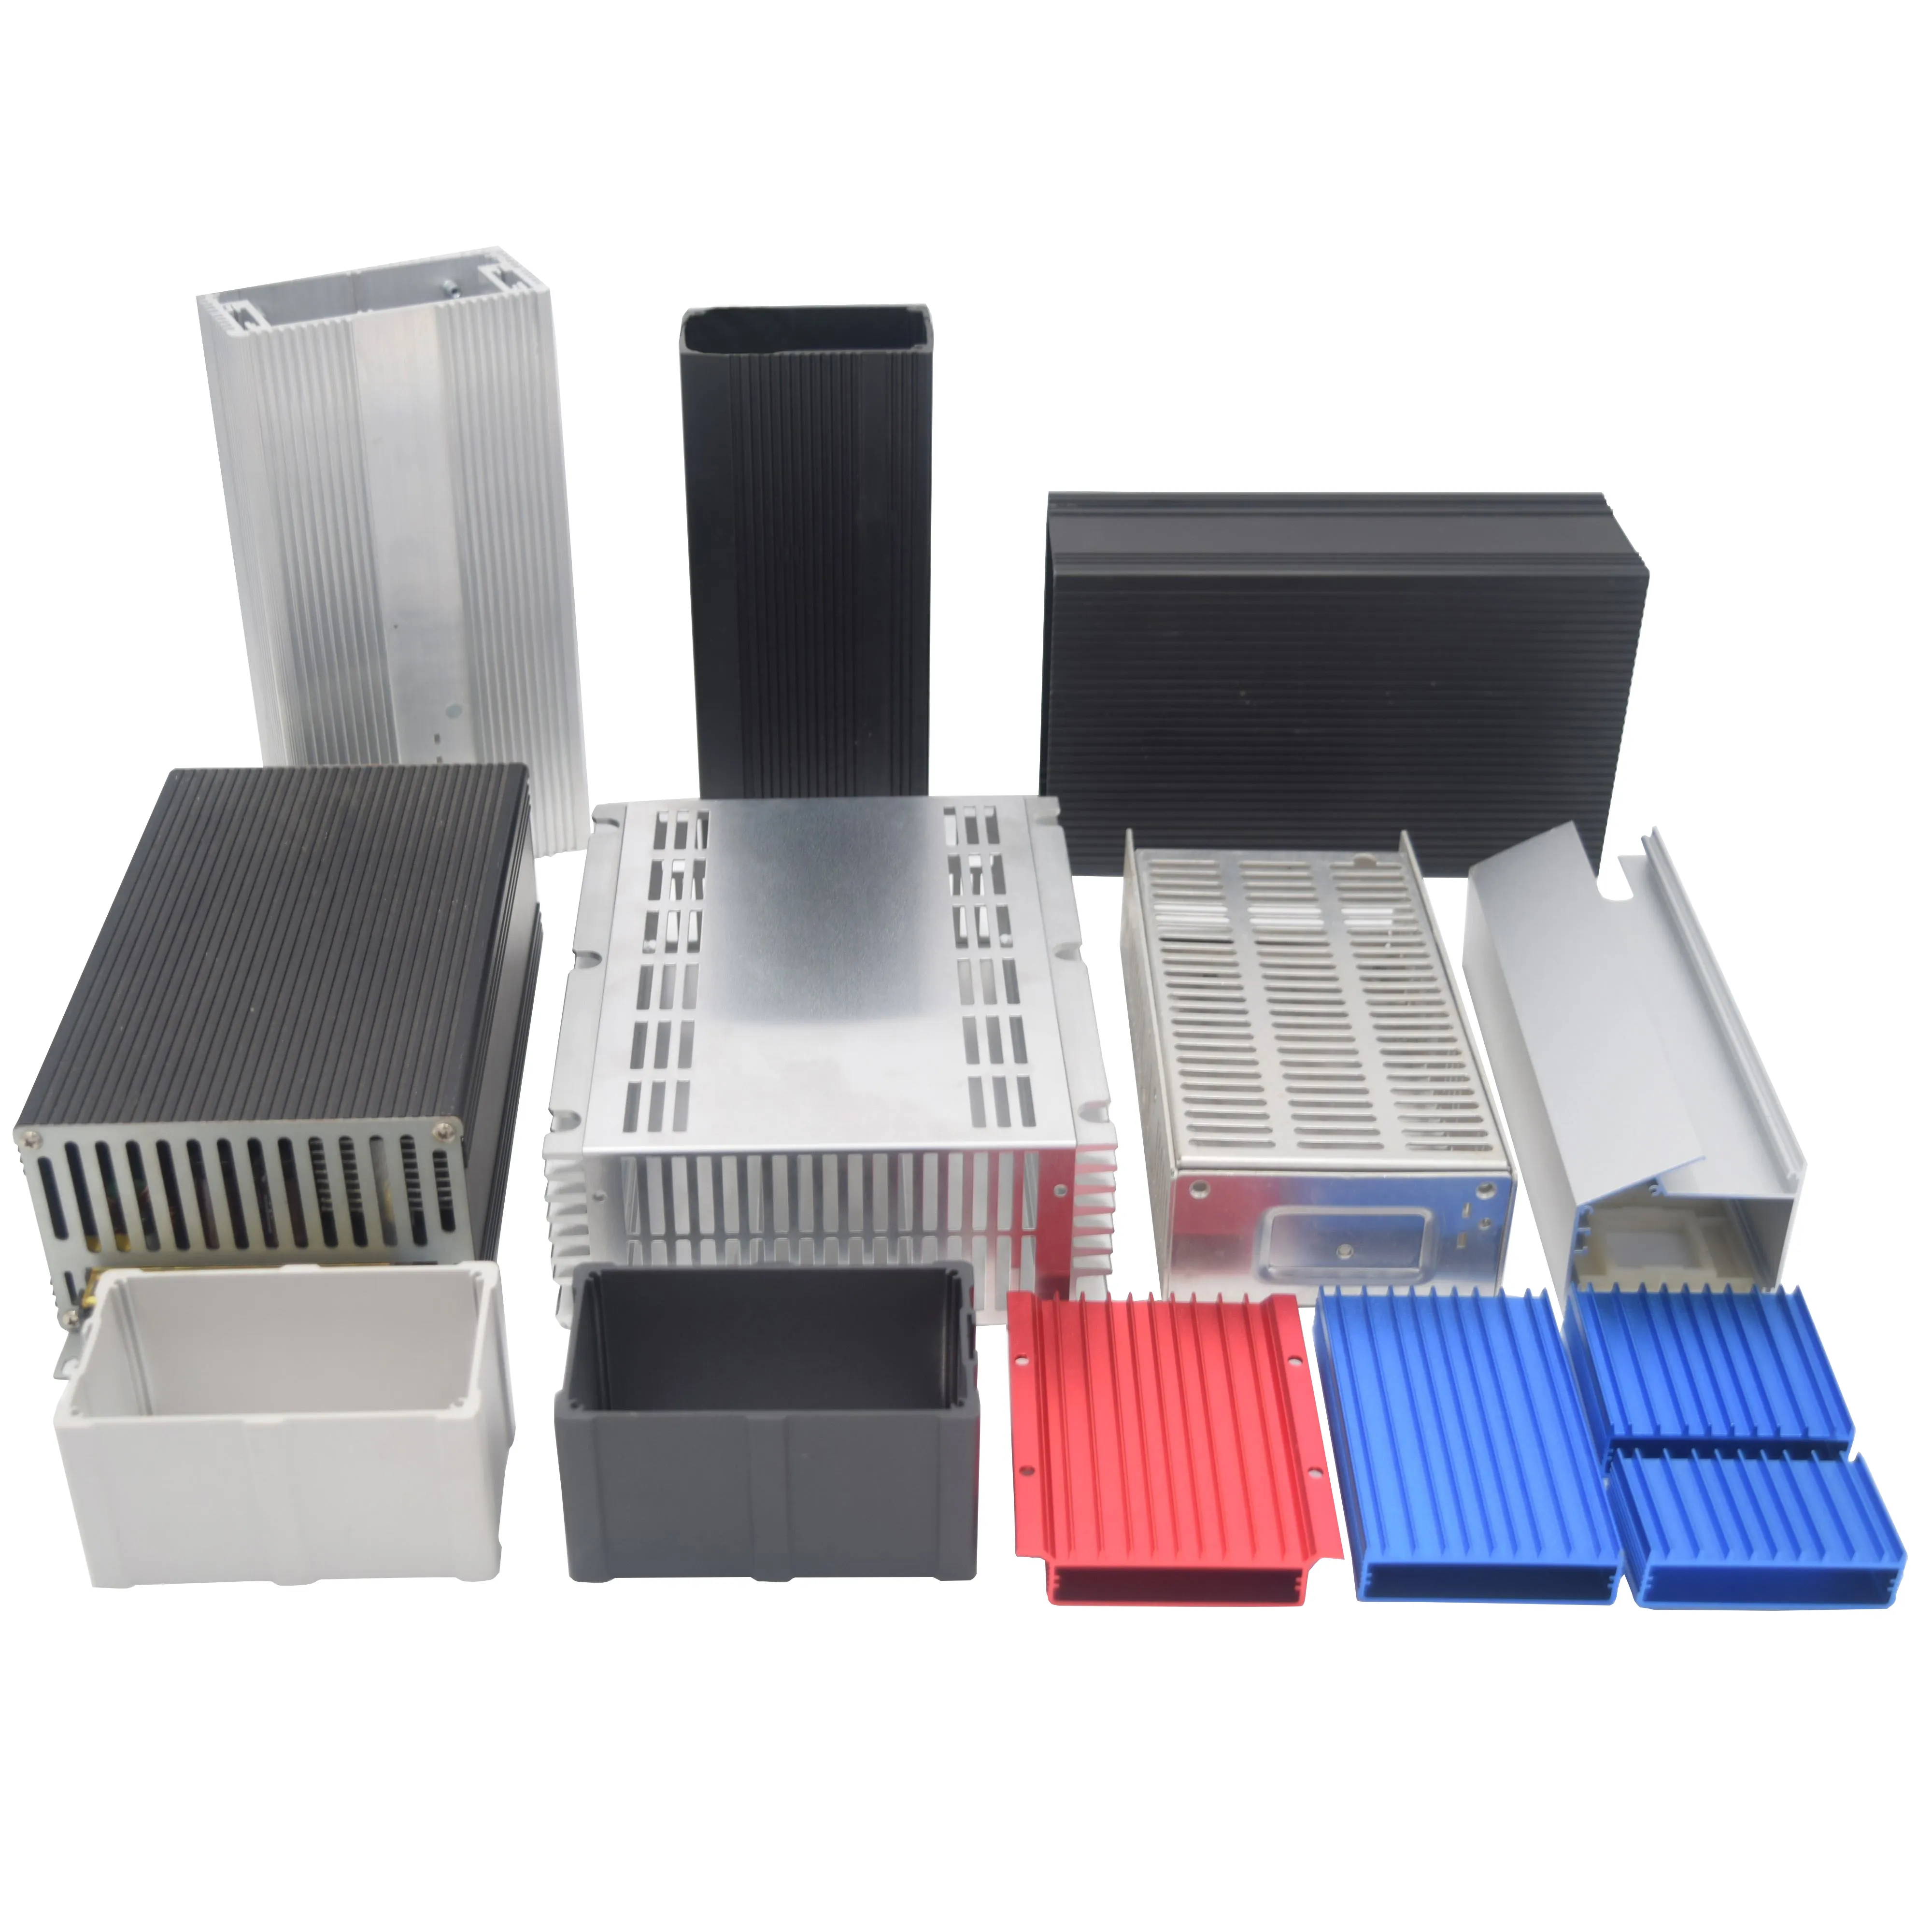 Aluminum Enclosure For Battery PCB Equipment Bluetooth Speaker Extruded Aluminum Box Enclosure Case Aluminum Assembled Box